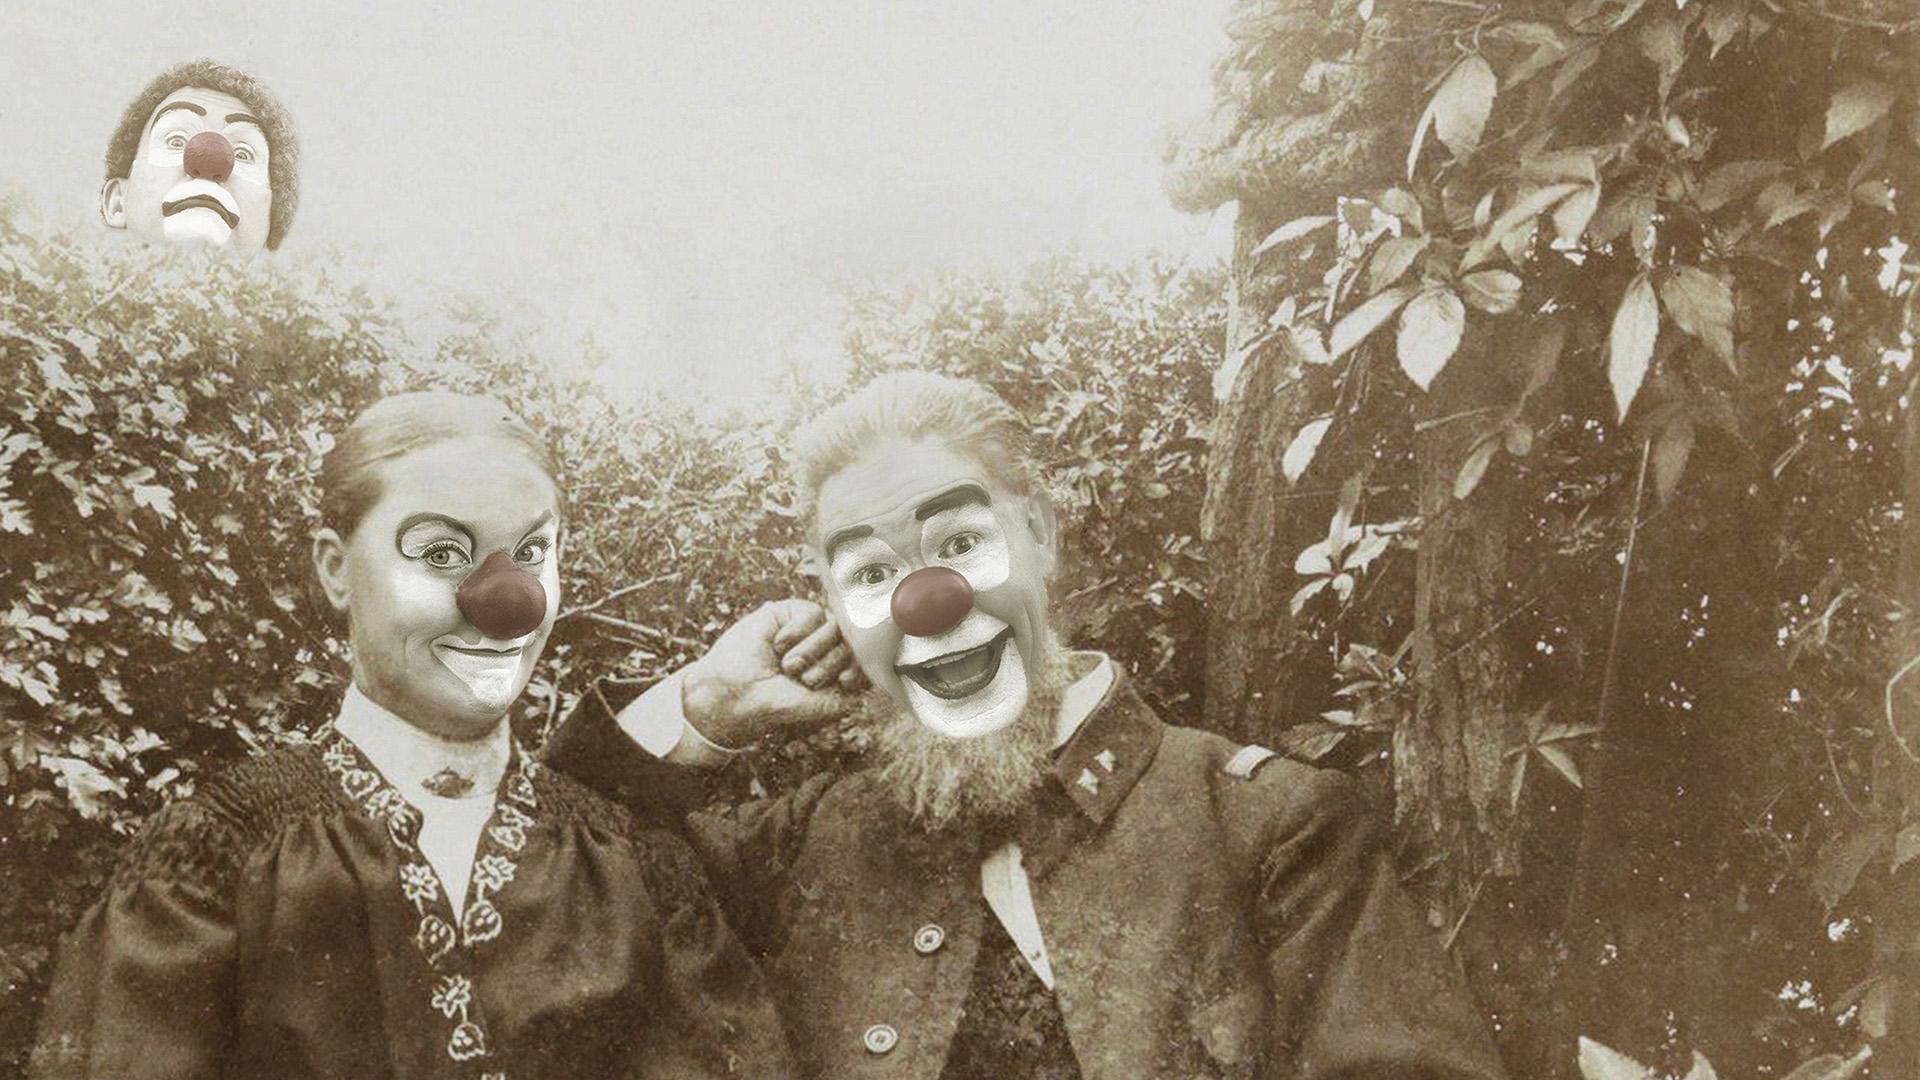 En bild i gammaldags stil, sepiafärgad. Två clowner på en bänk i förgrunden, en tredje clown sticker upp huvudet bakom en buske i bakgrunden.